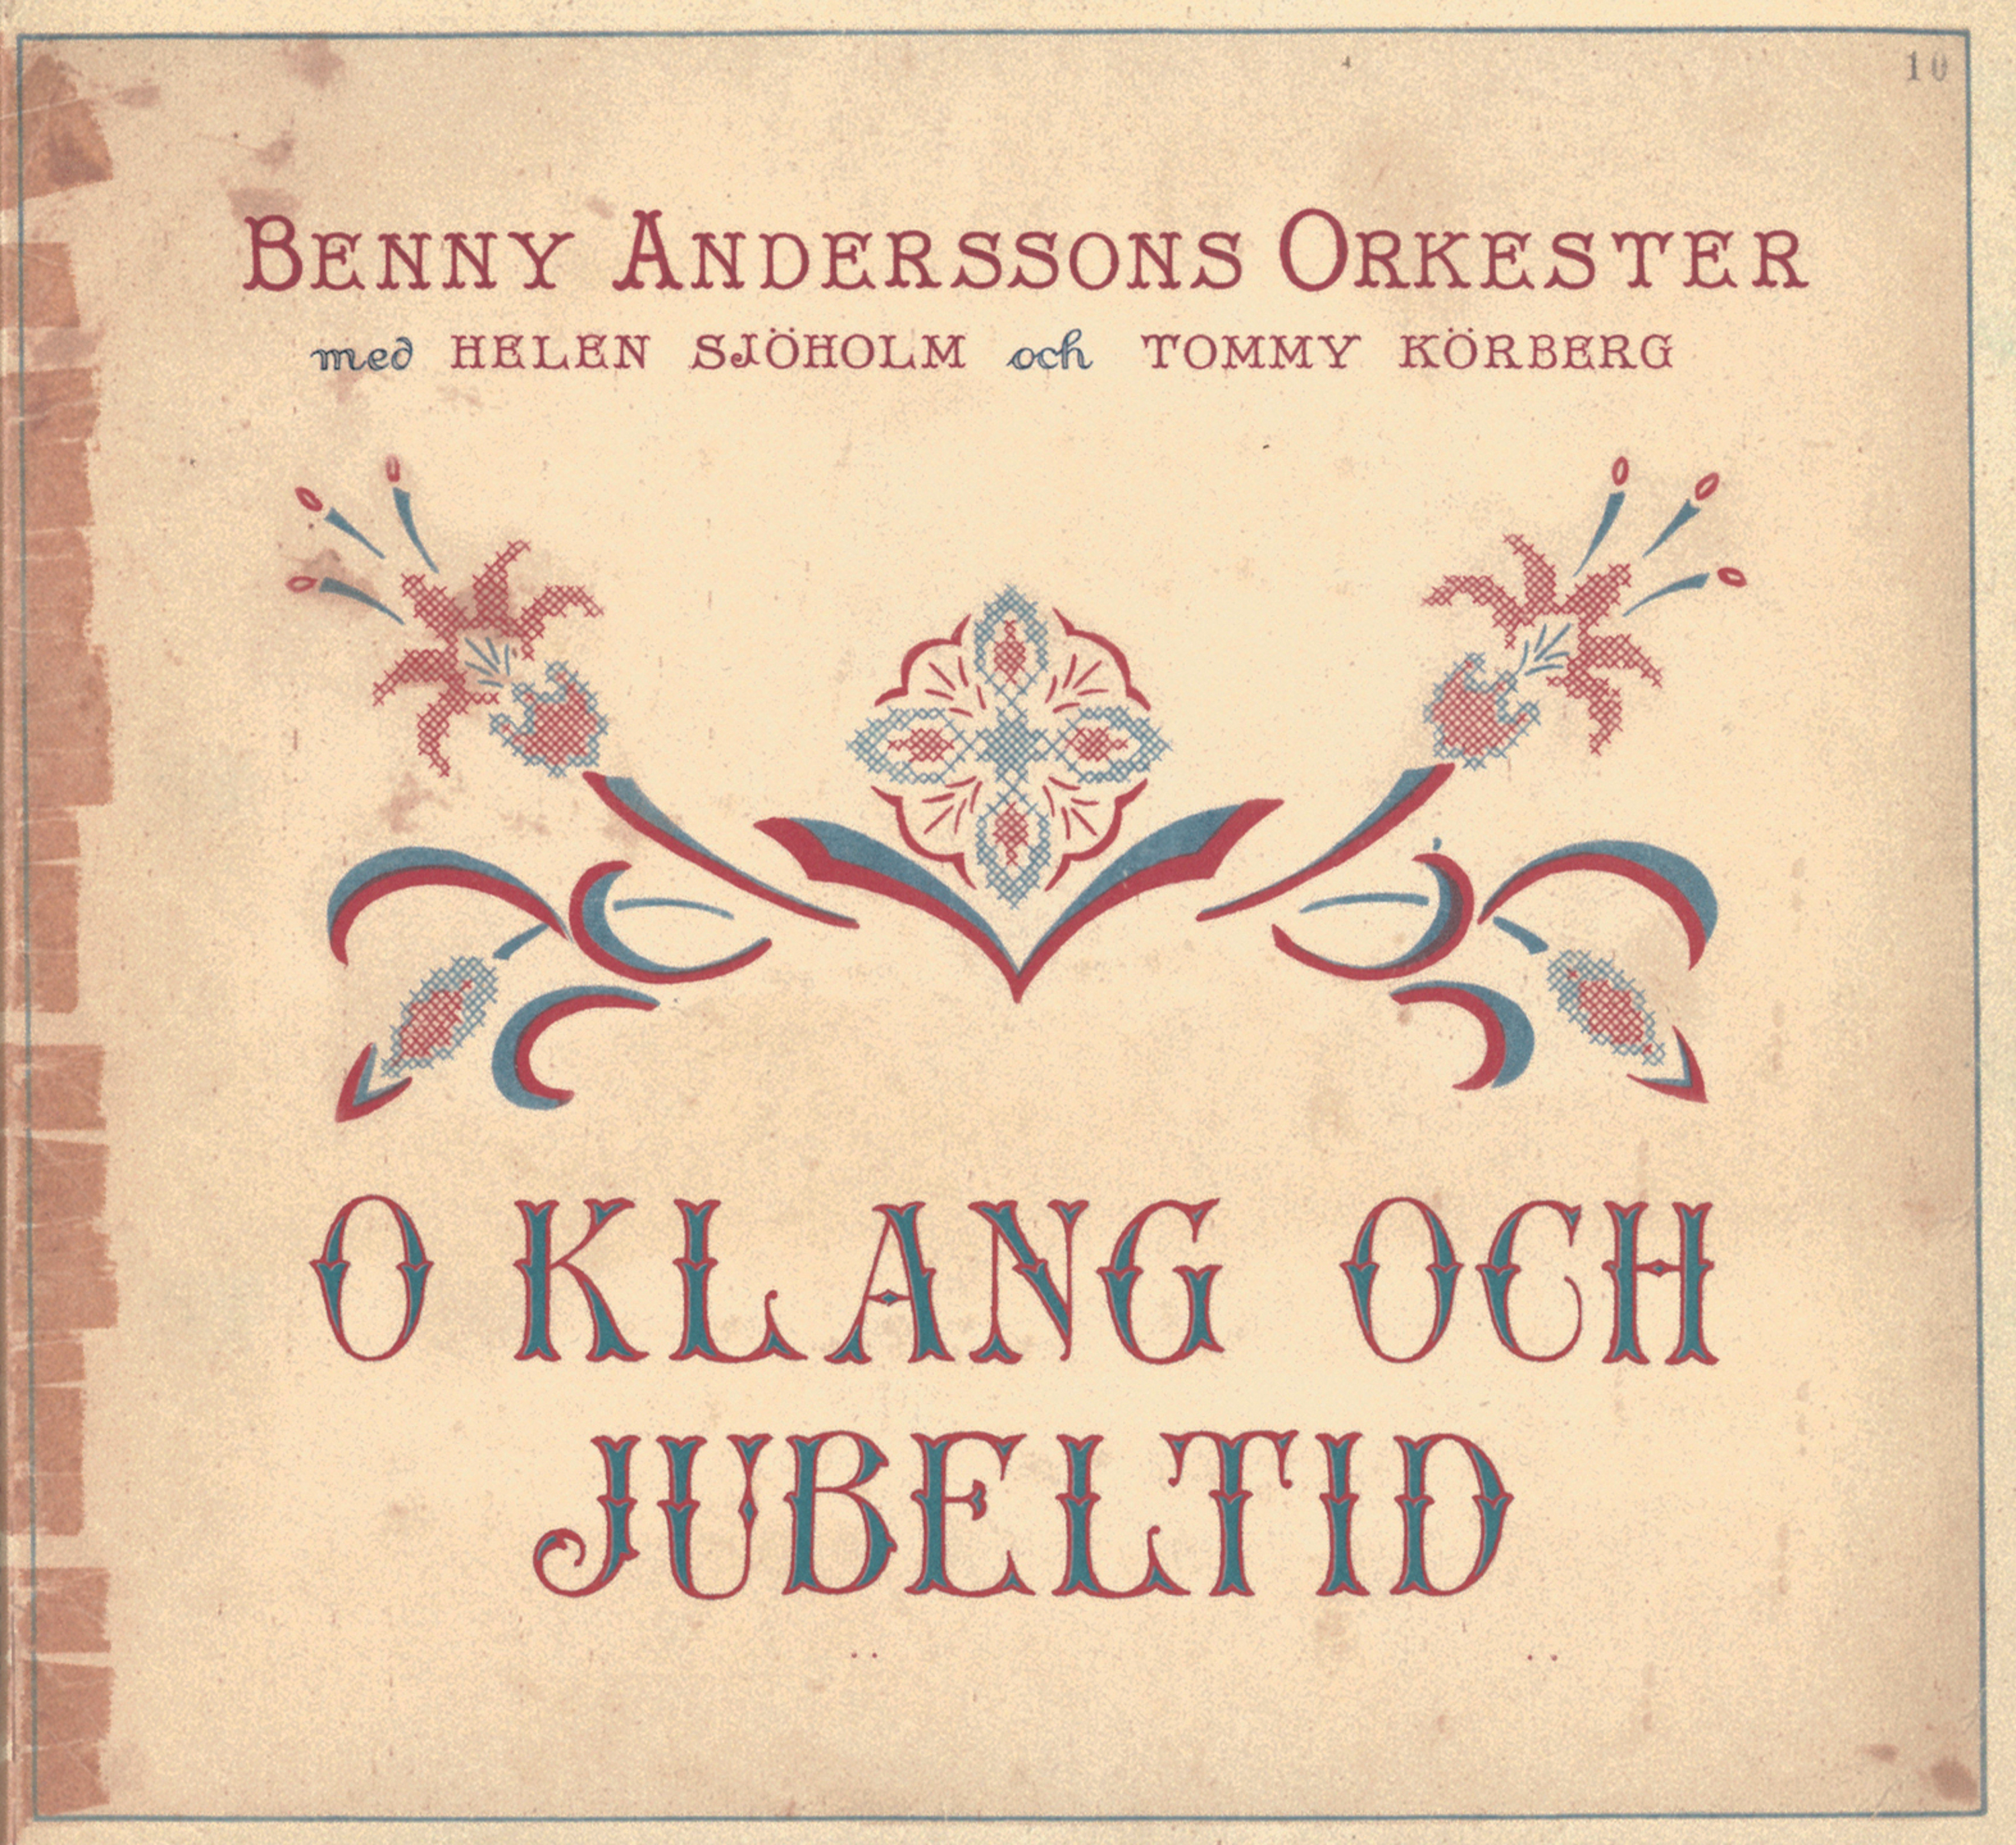 Benny Anderssons Orkester - O klang och jubeltid - CD